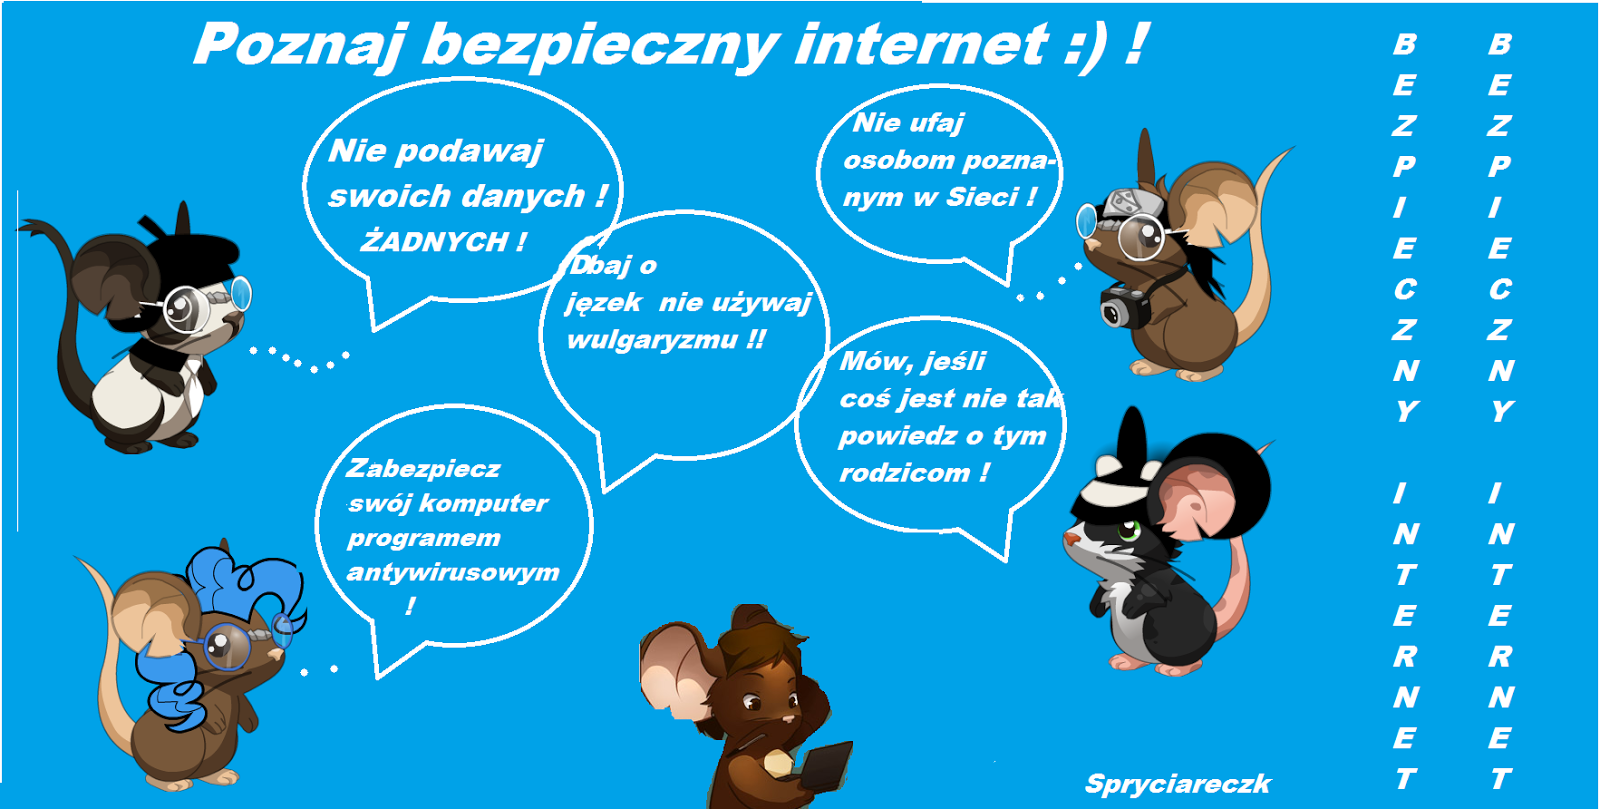 Poznaj bezpieczny internet :)!